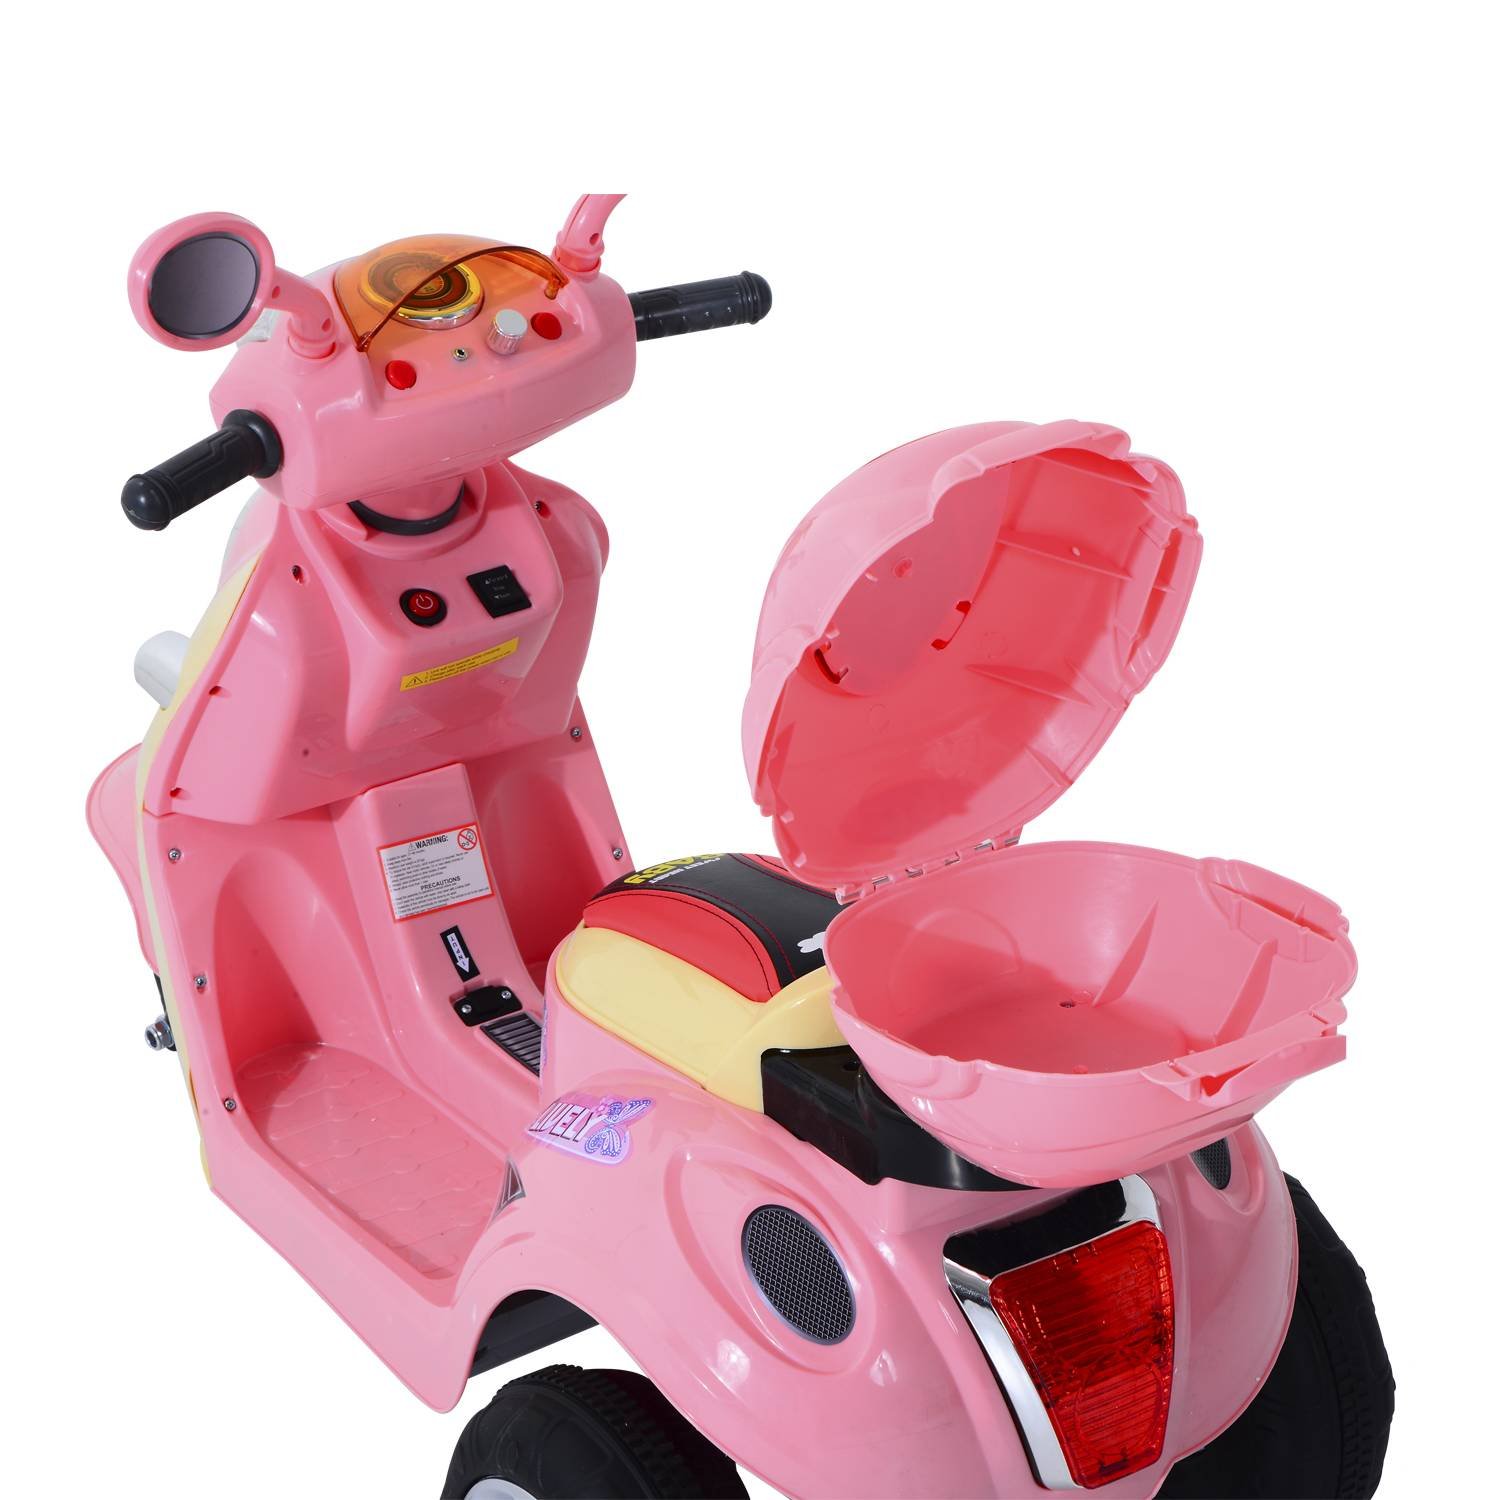 Motocicleta elétrica infantil, carro de triciclo, motocicleta